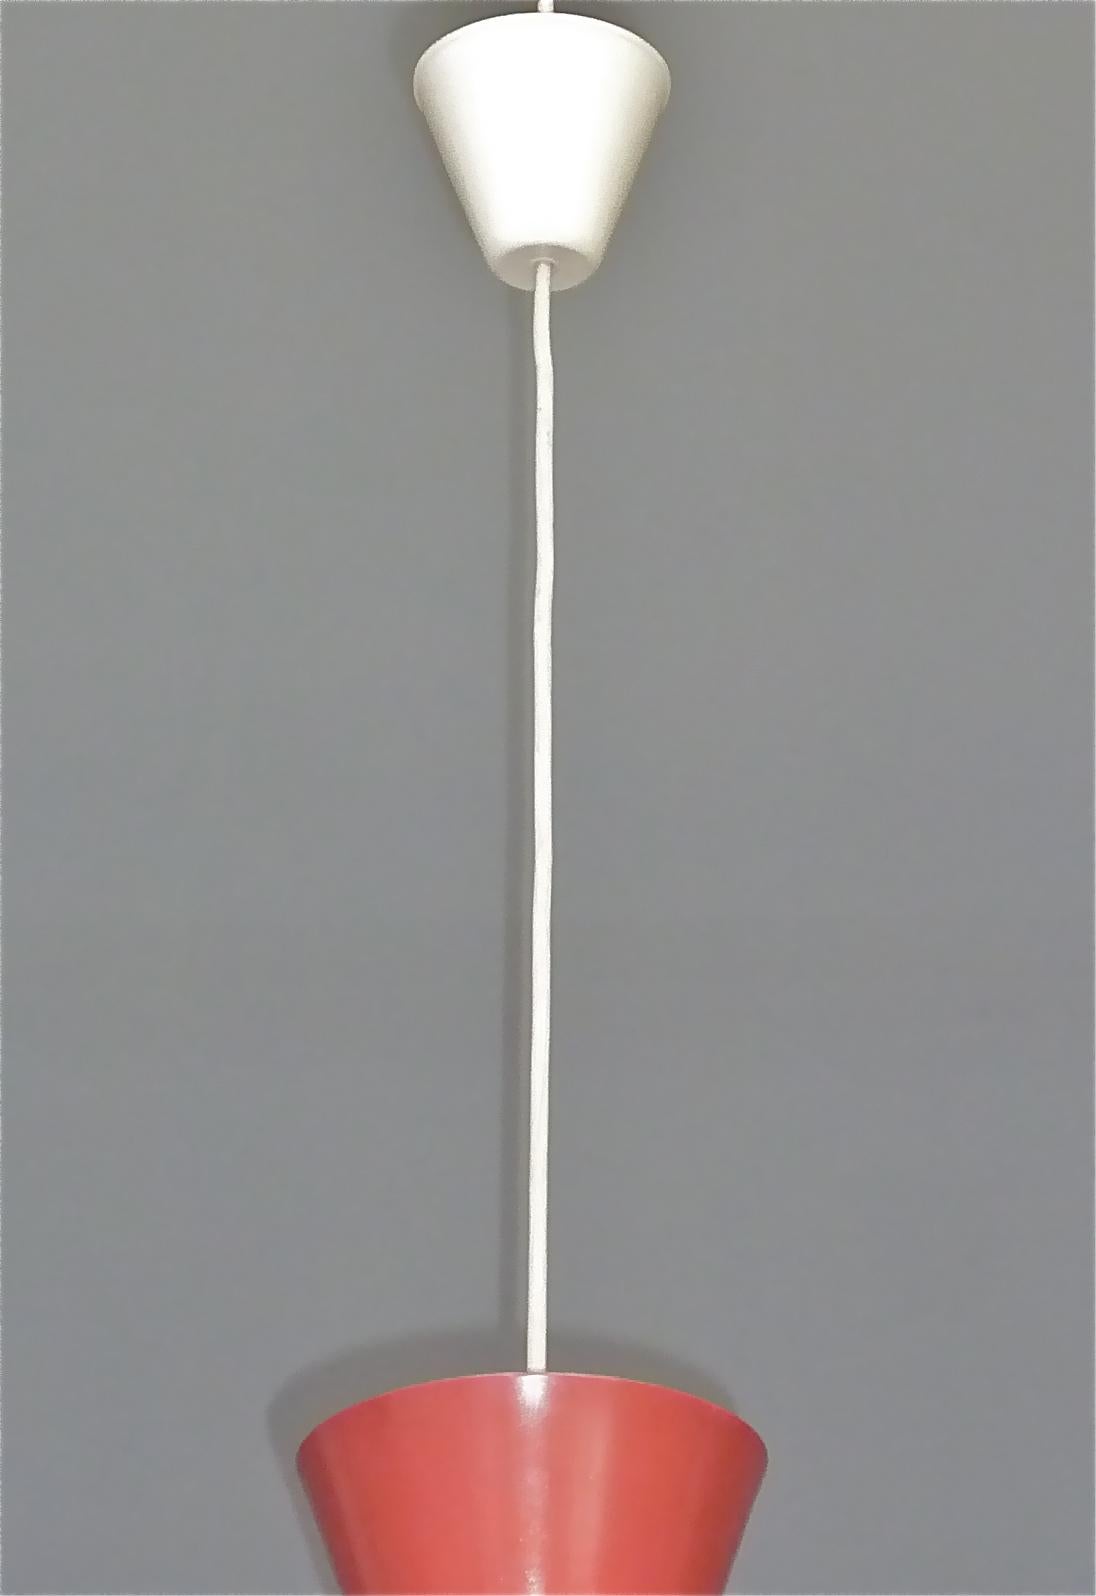 Swiss Midcentury Carl Moor BAG Turgi Pendant Lamp Diabolo Red Stilnovo Style 1950s For Sale